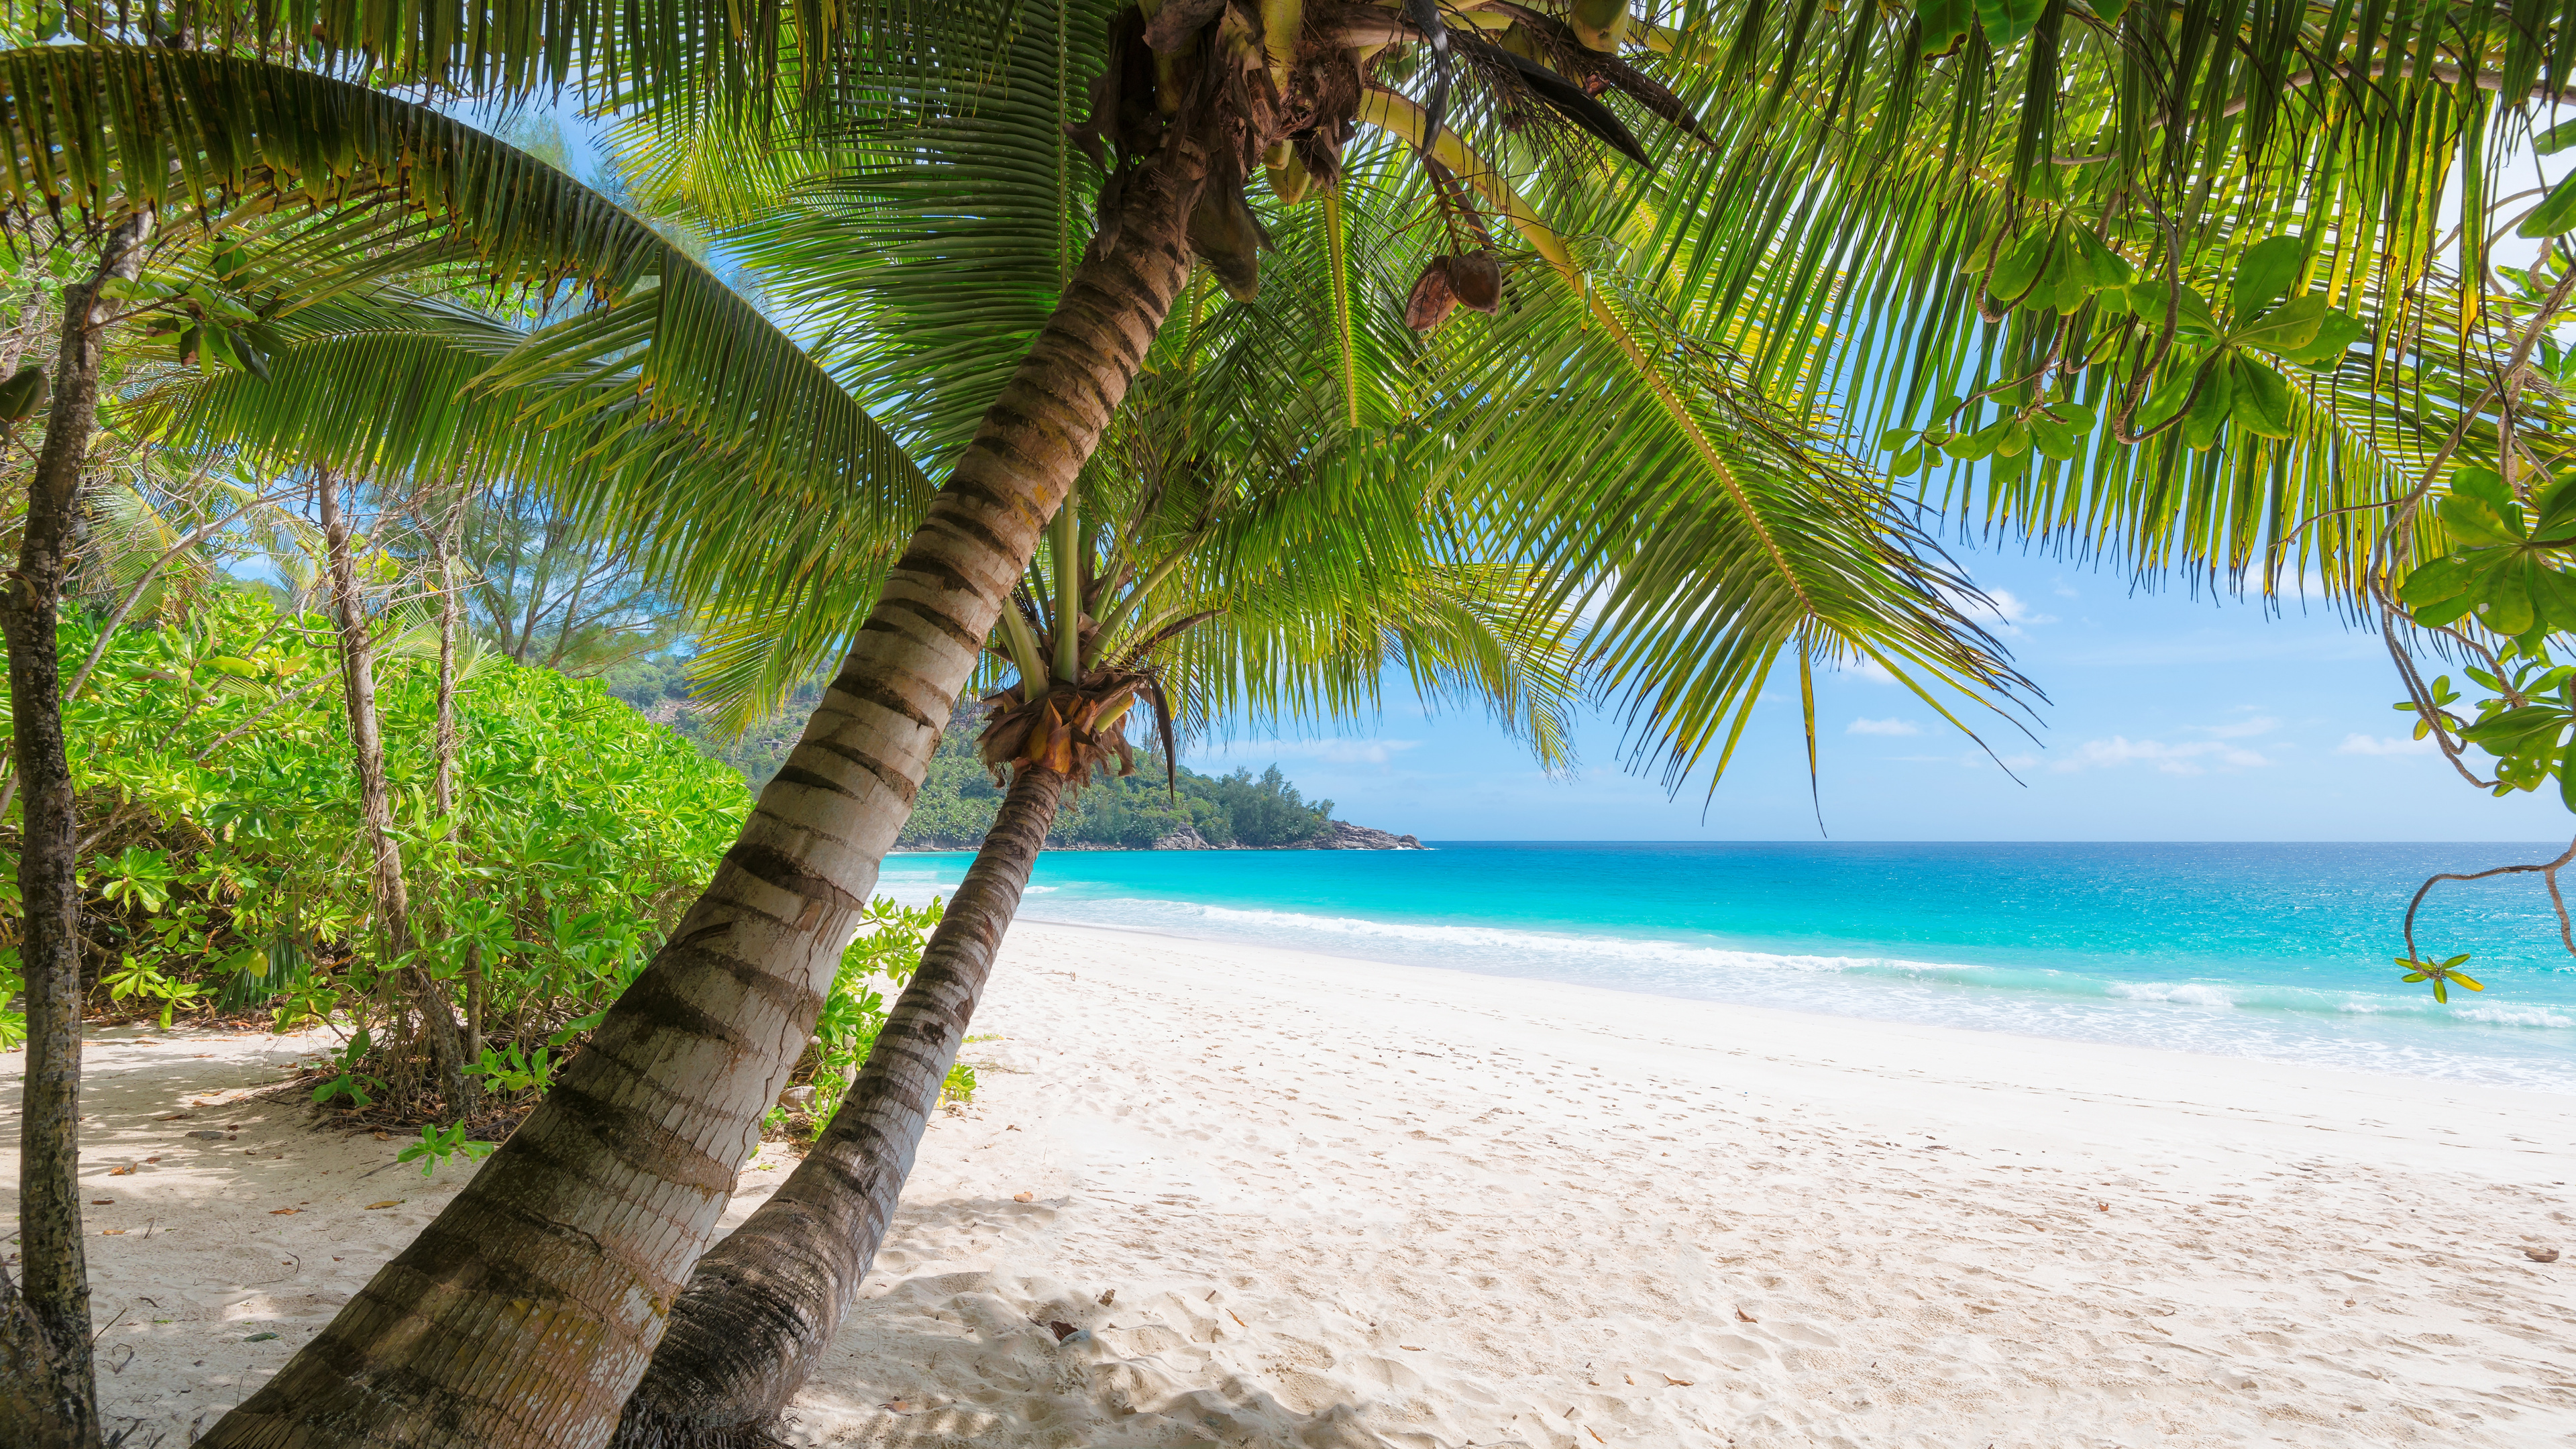 岸边, 热带地区, 加勒比, 度假, 度假村 壁纸 3840x2160 允许